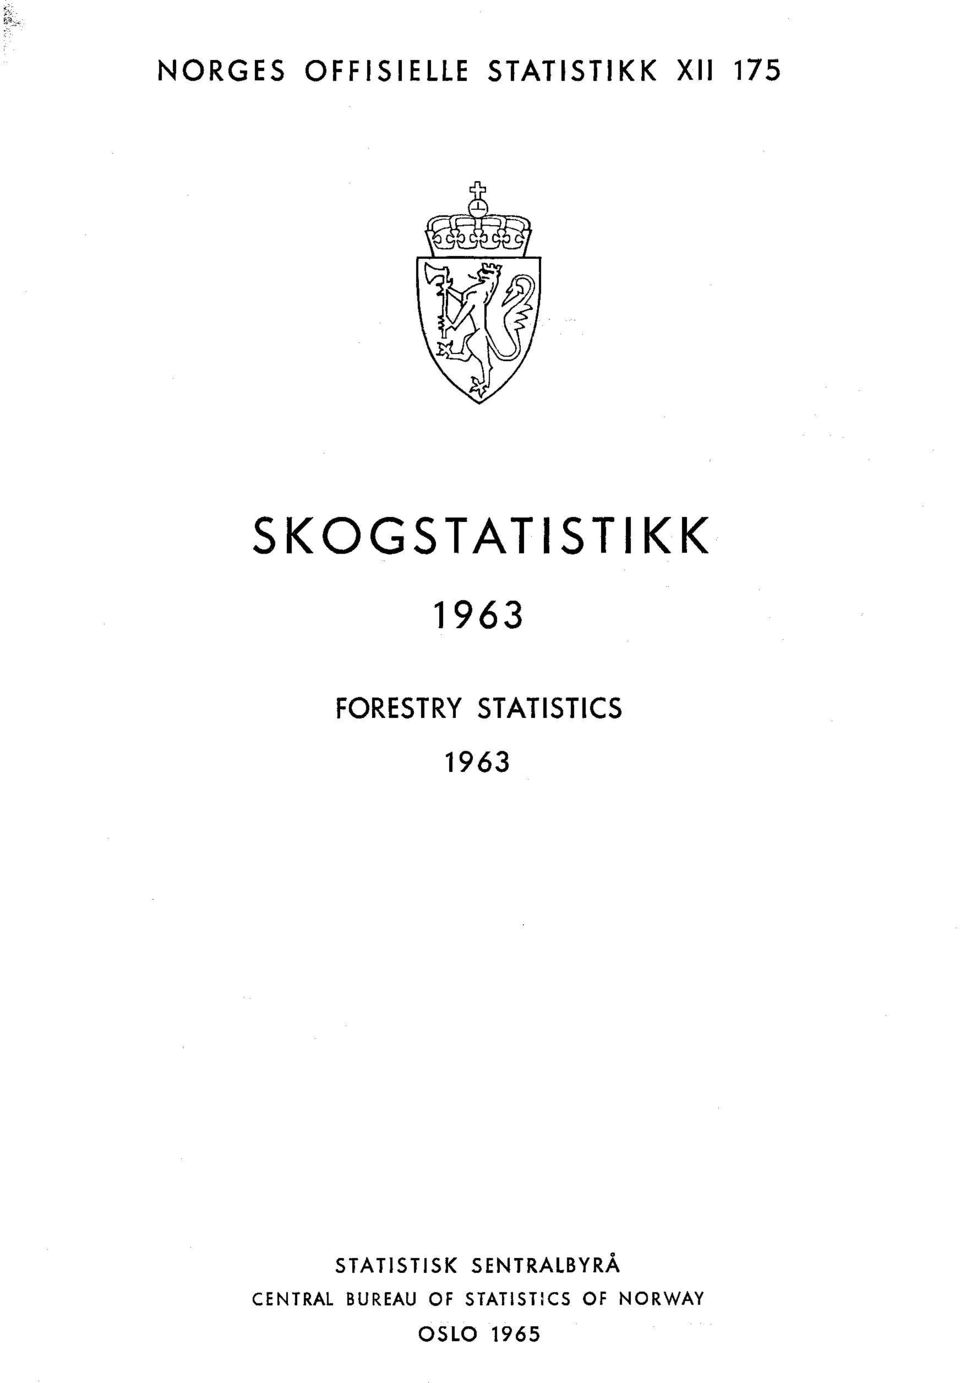 STATISTICS 1963 STATISTISK SENTRALBYRÅ